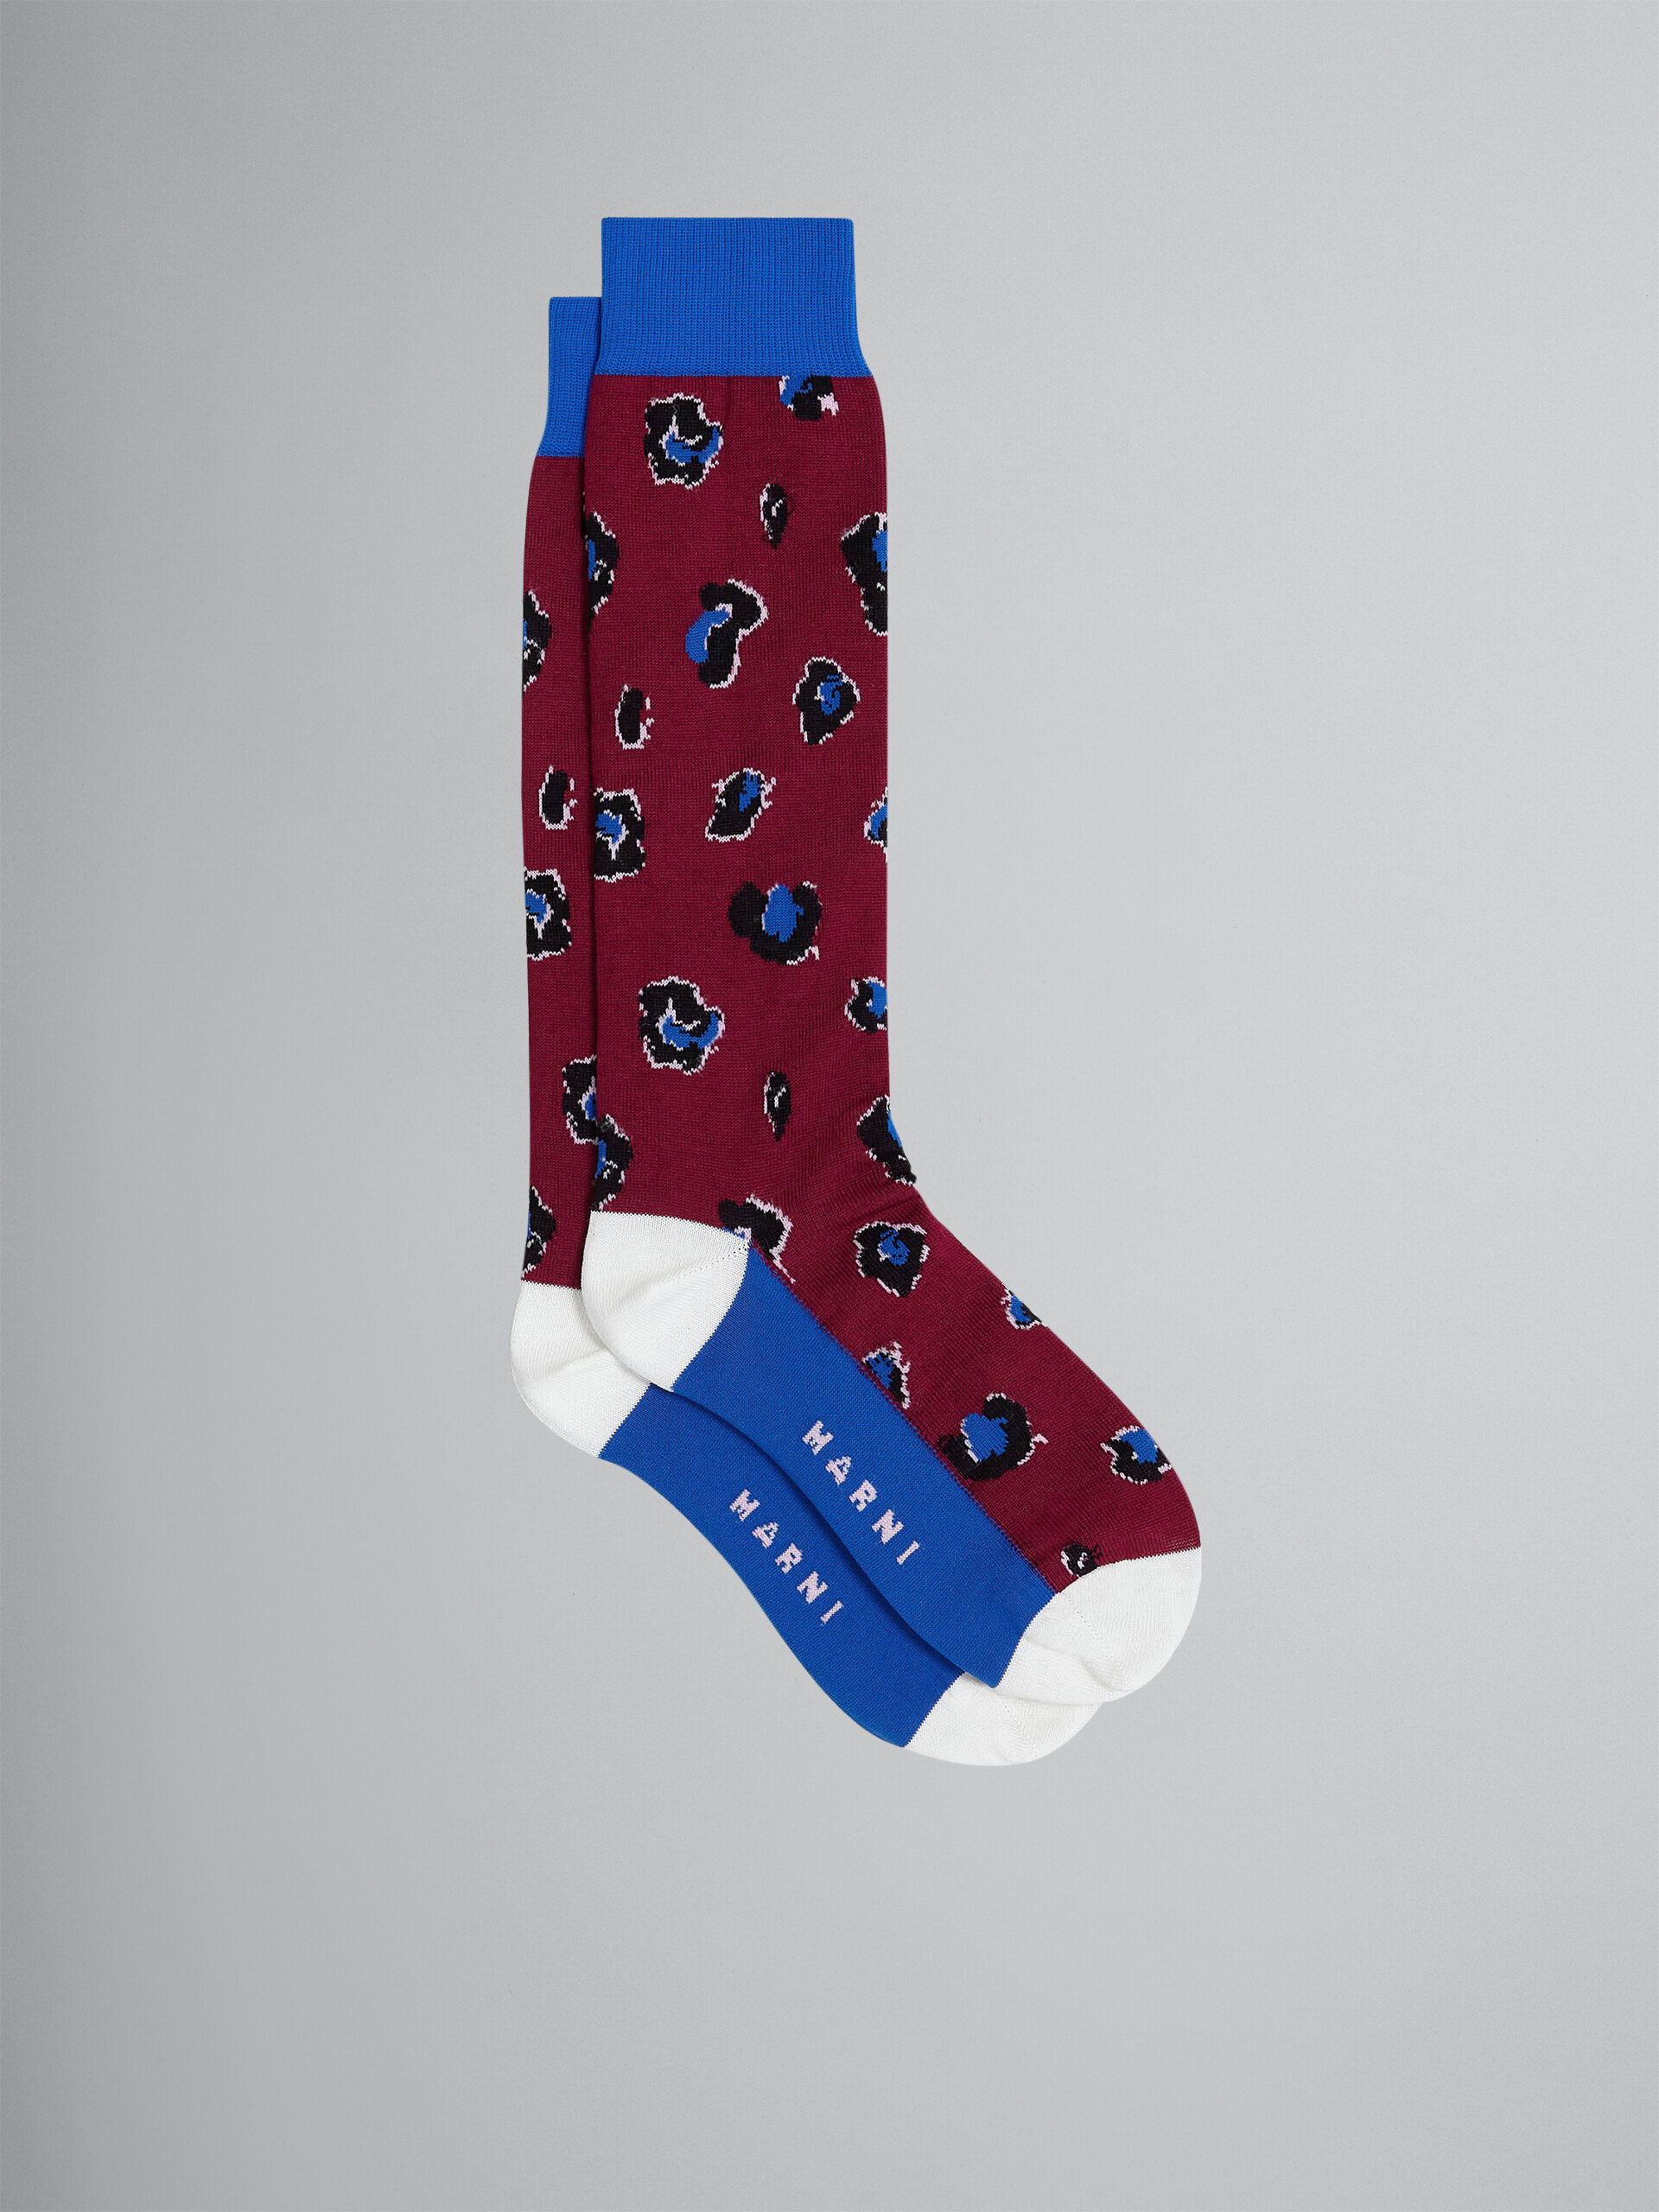 Burgundy Feline Twist cotton and nylon socks - Socks - Image 1